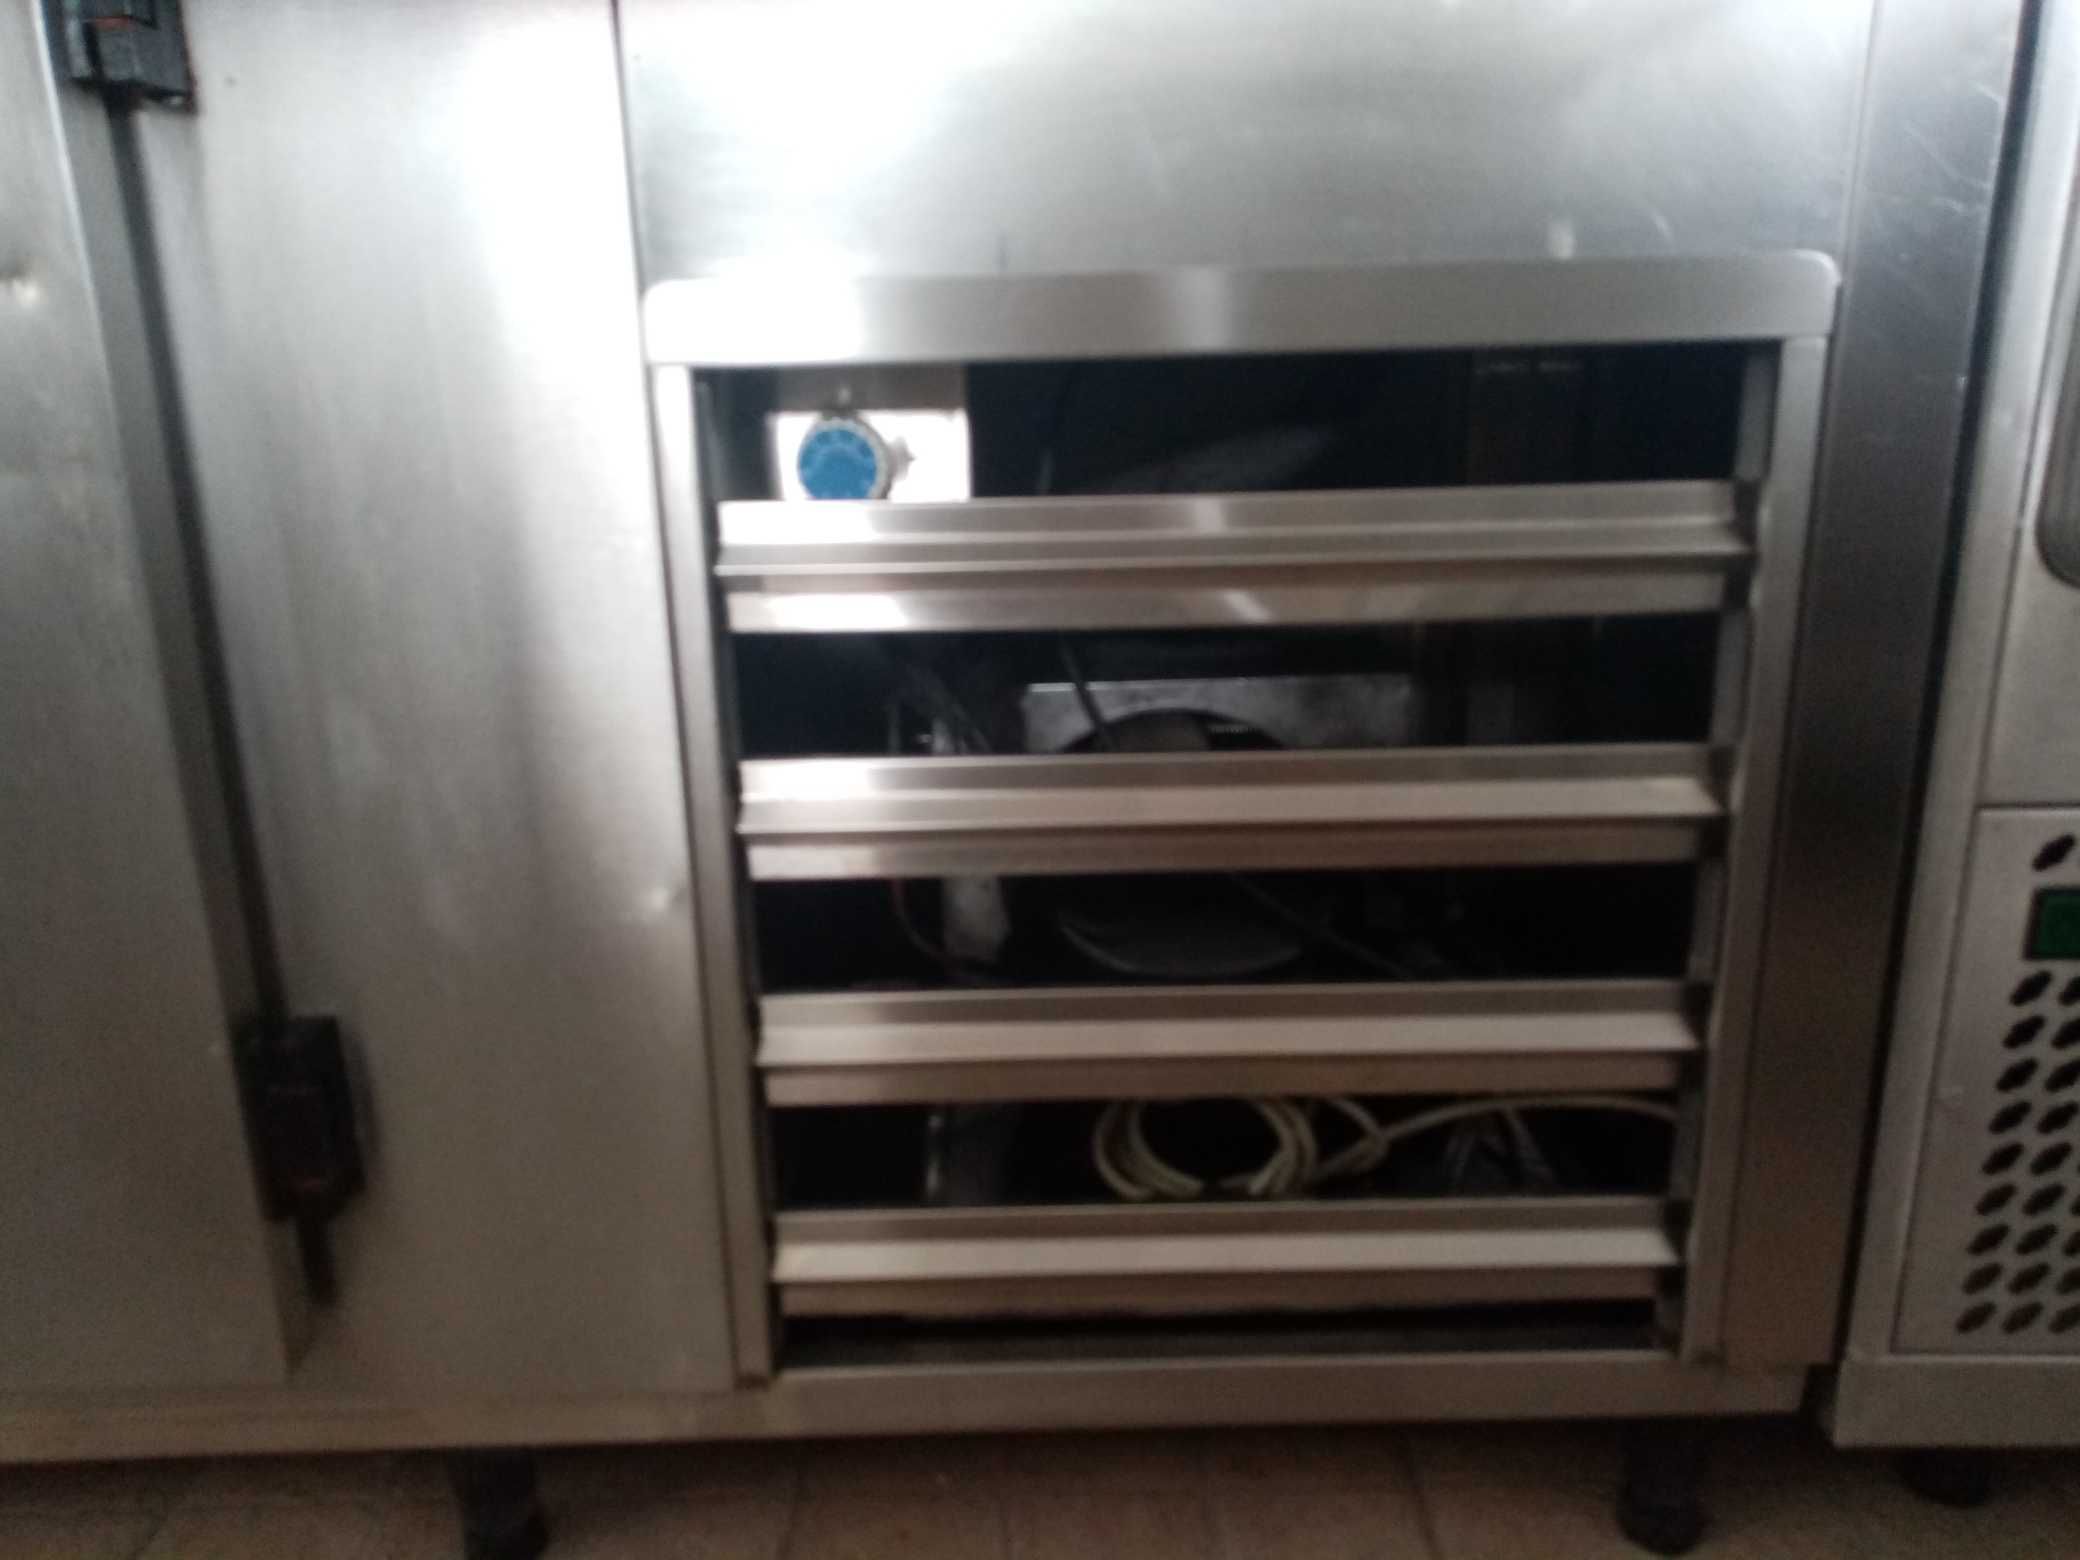 ACM1182 - Bancada Refrigerada em Inox c/ 2 Portas Ventilada - Usado